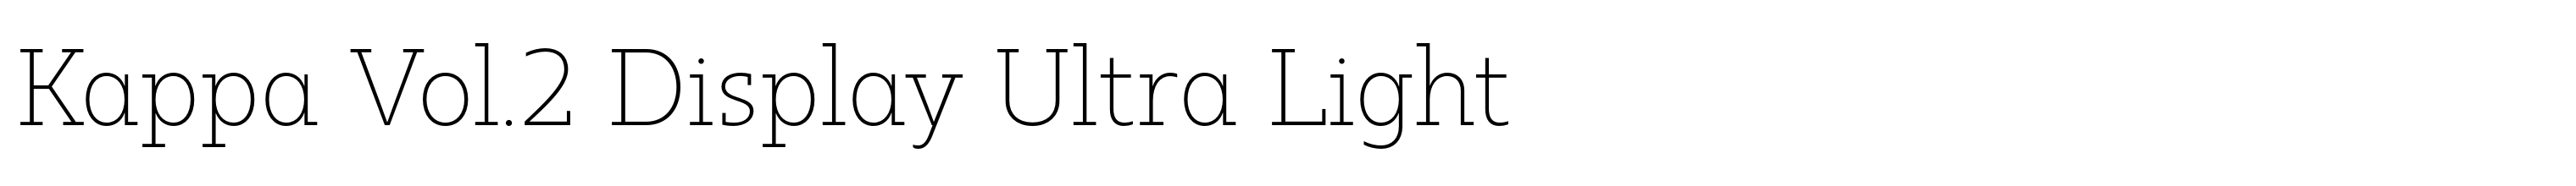 Kappa Vol.2 Display Ultra Light